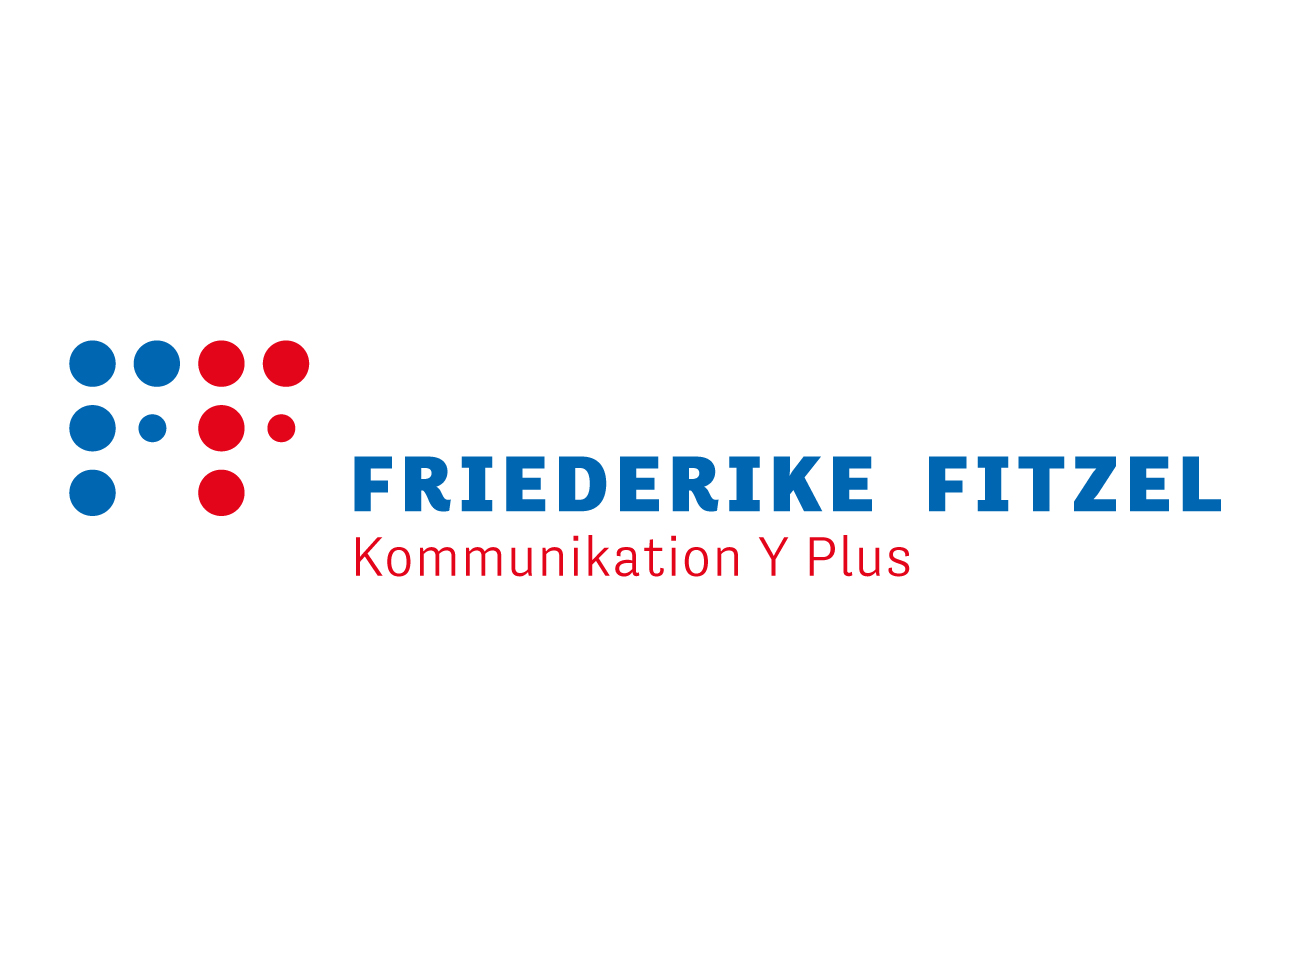 martin_zech_design_corporate_design_friederike_fitzel_logo